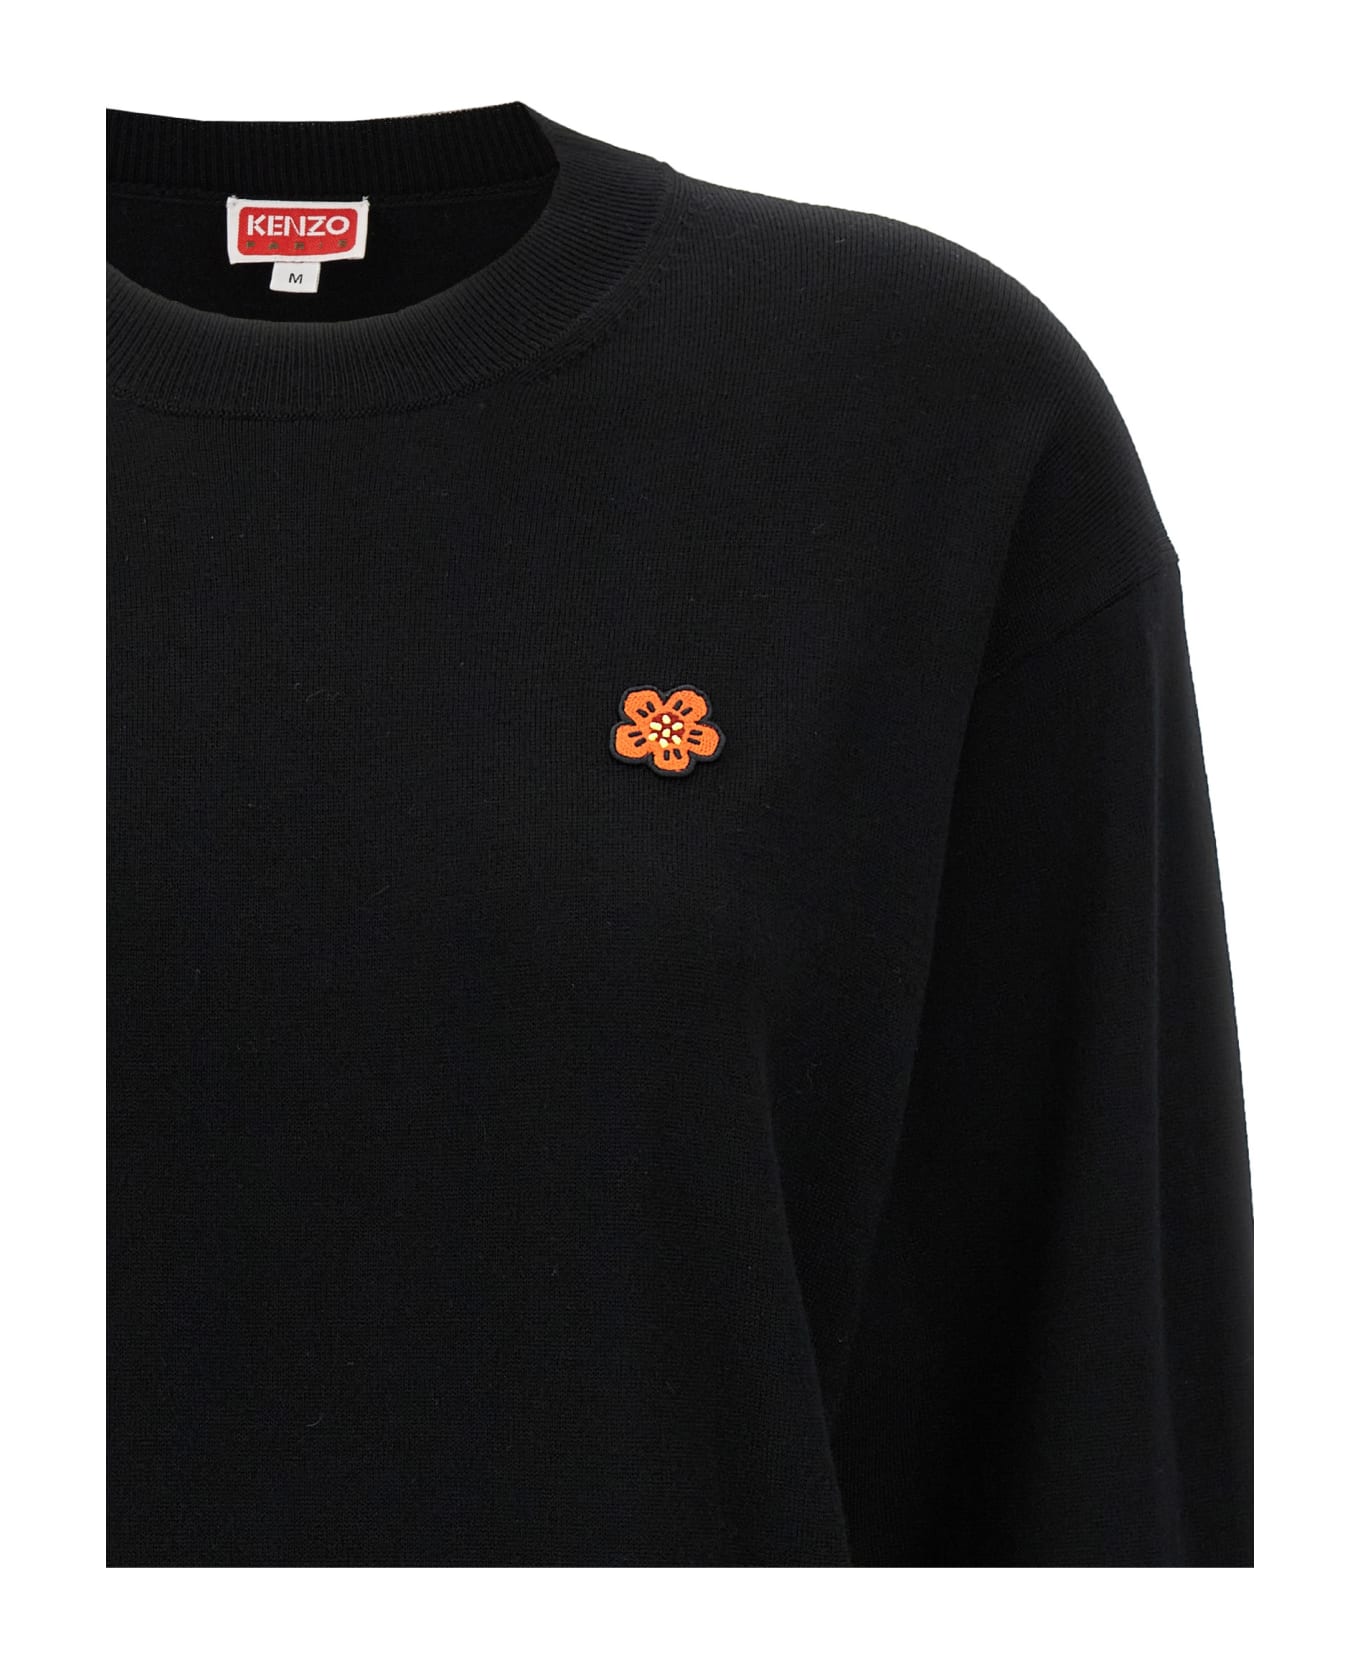 Kenzo 'boke Crest' Sweater - Black  